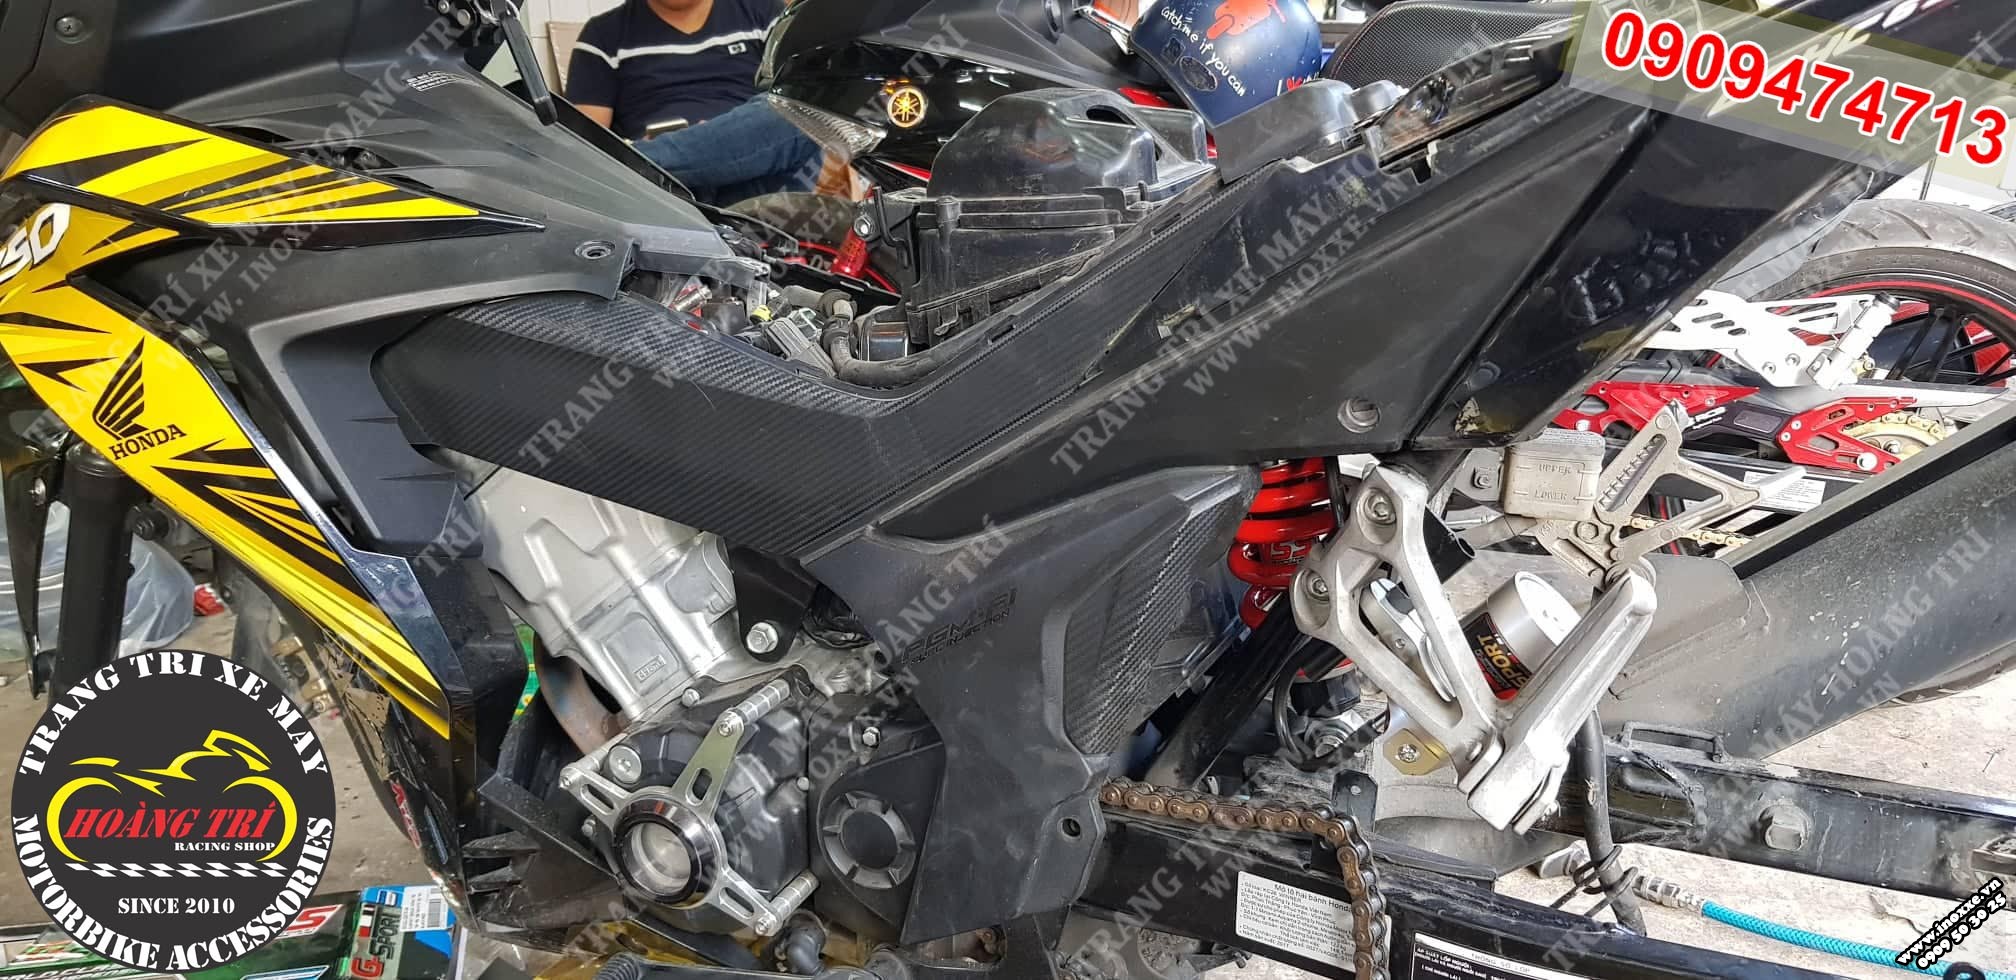 Quá trình tháo phuộc zin và lắp đặt phuộc bình dầu YSS G-Sport cho xe Honda Winner